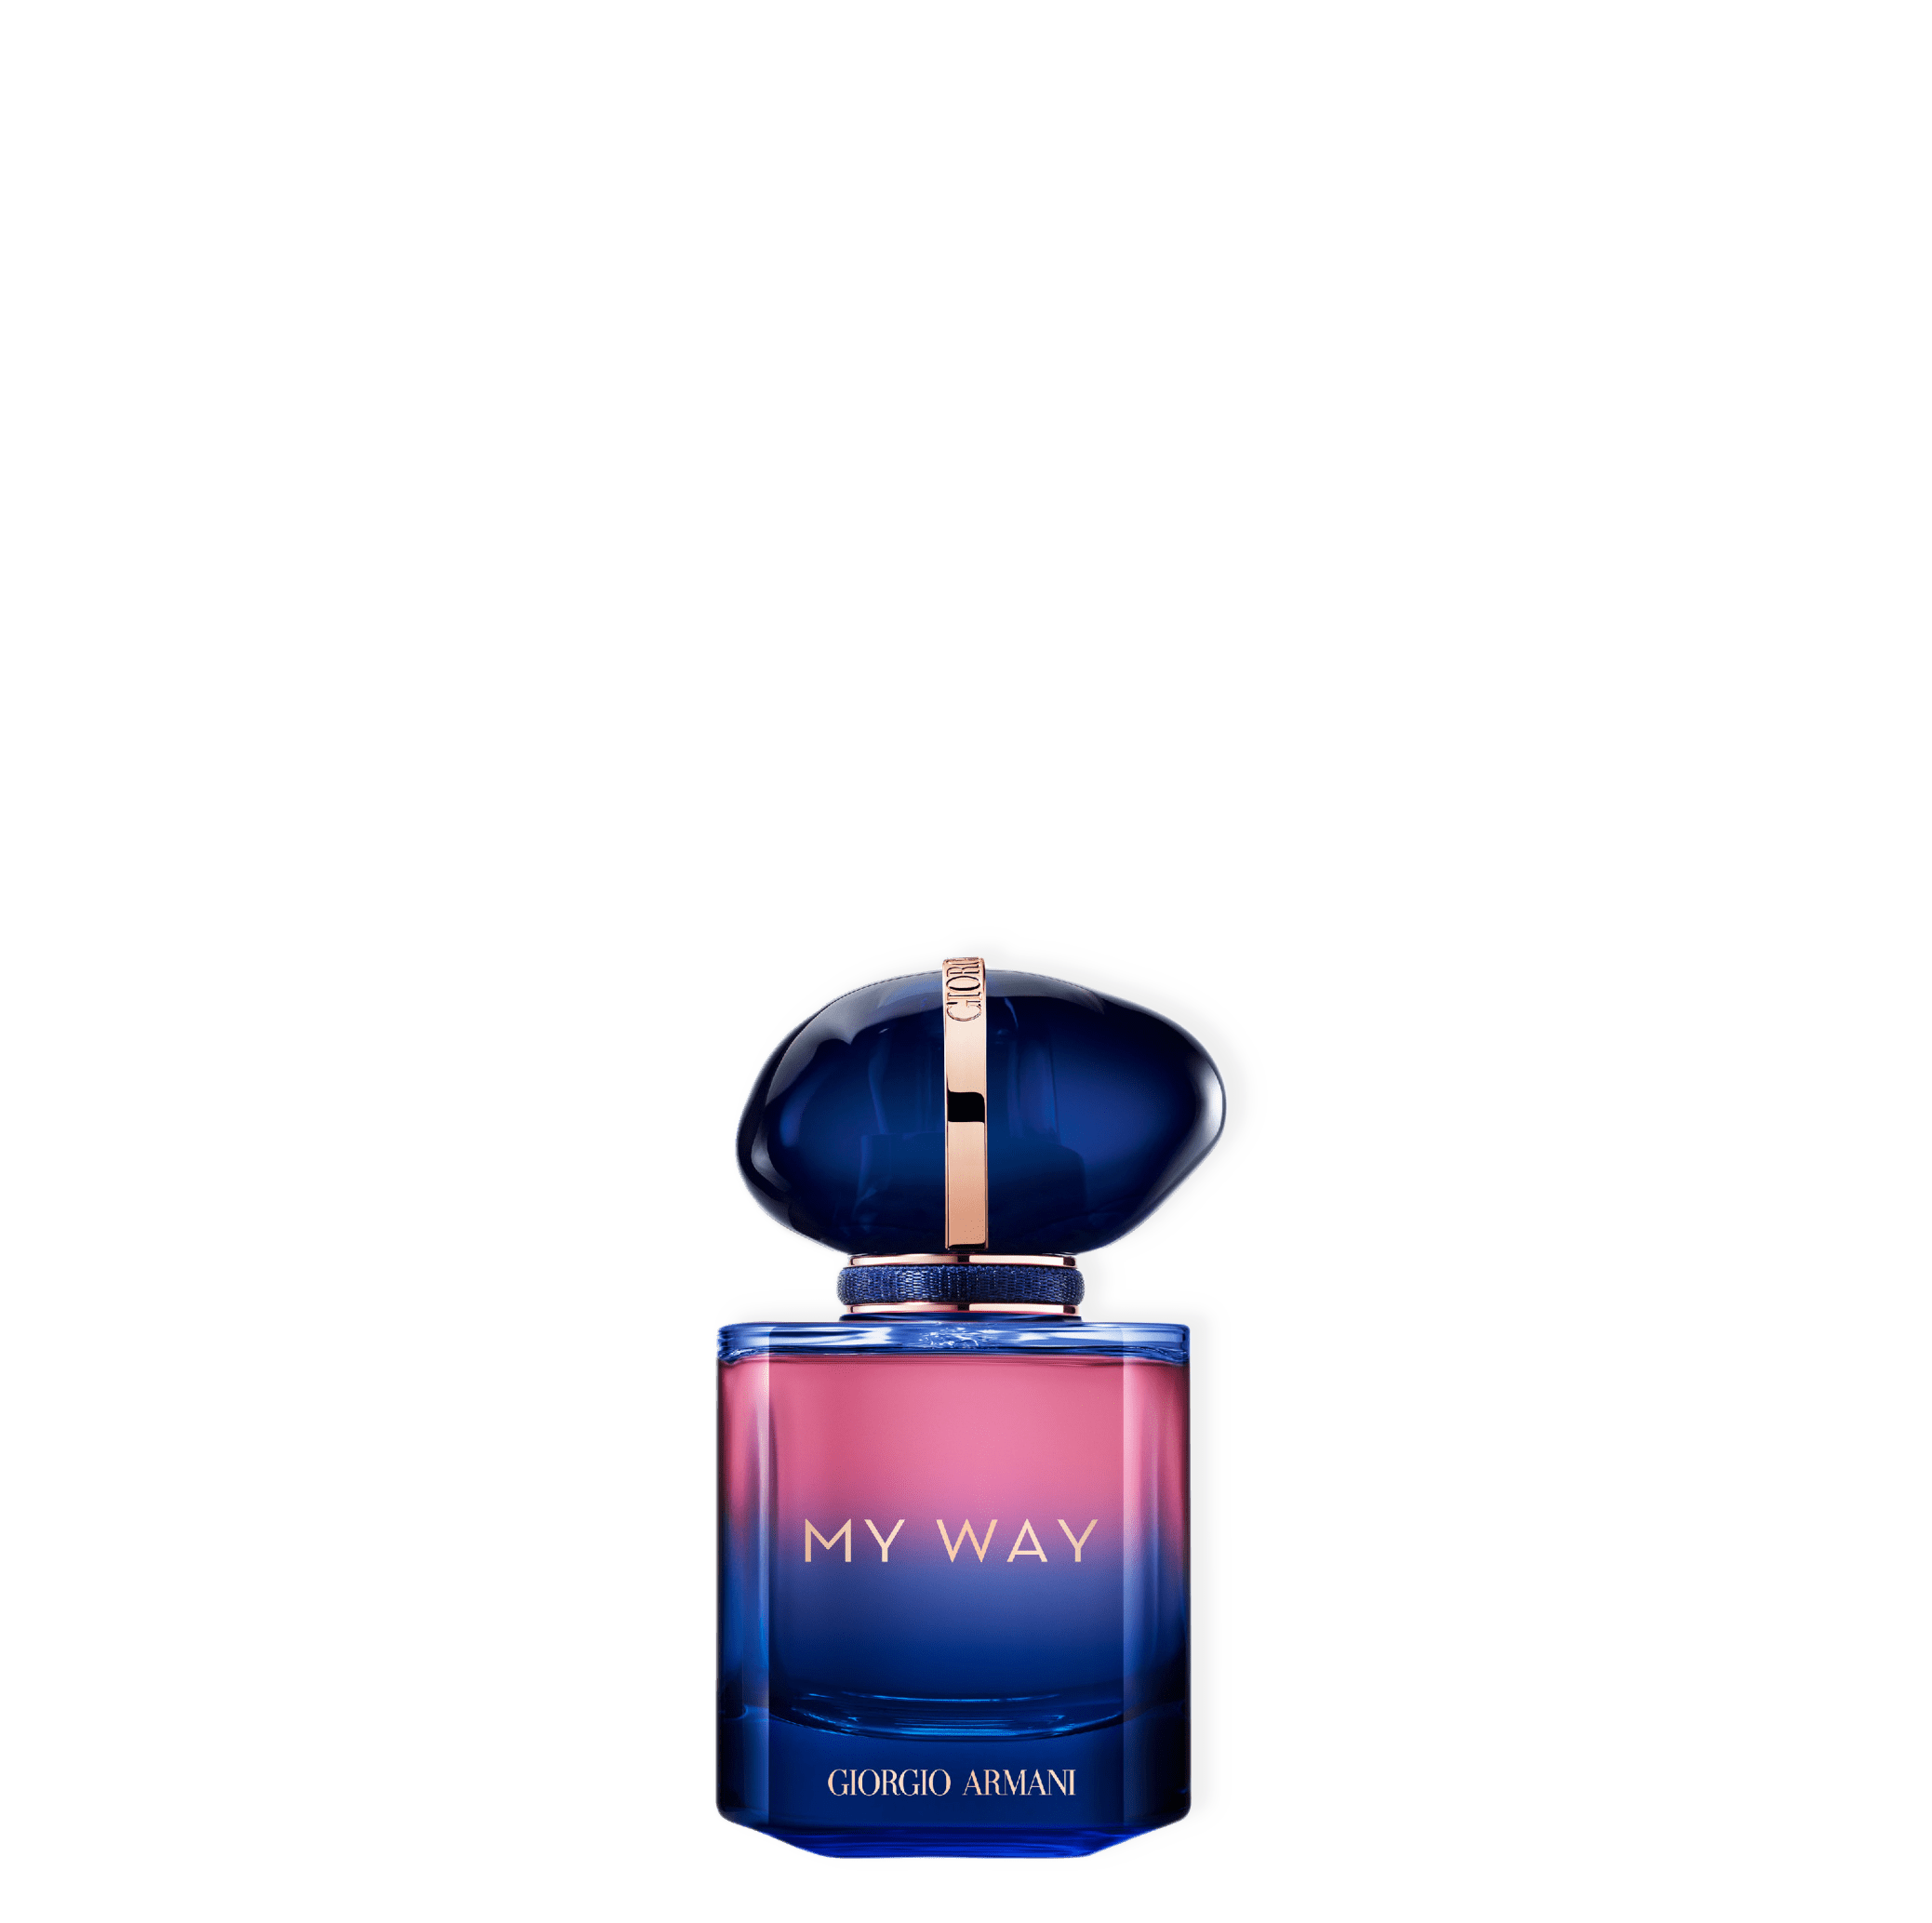 My Way Parfum från Armani